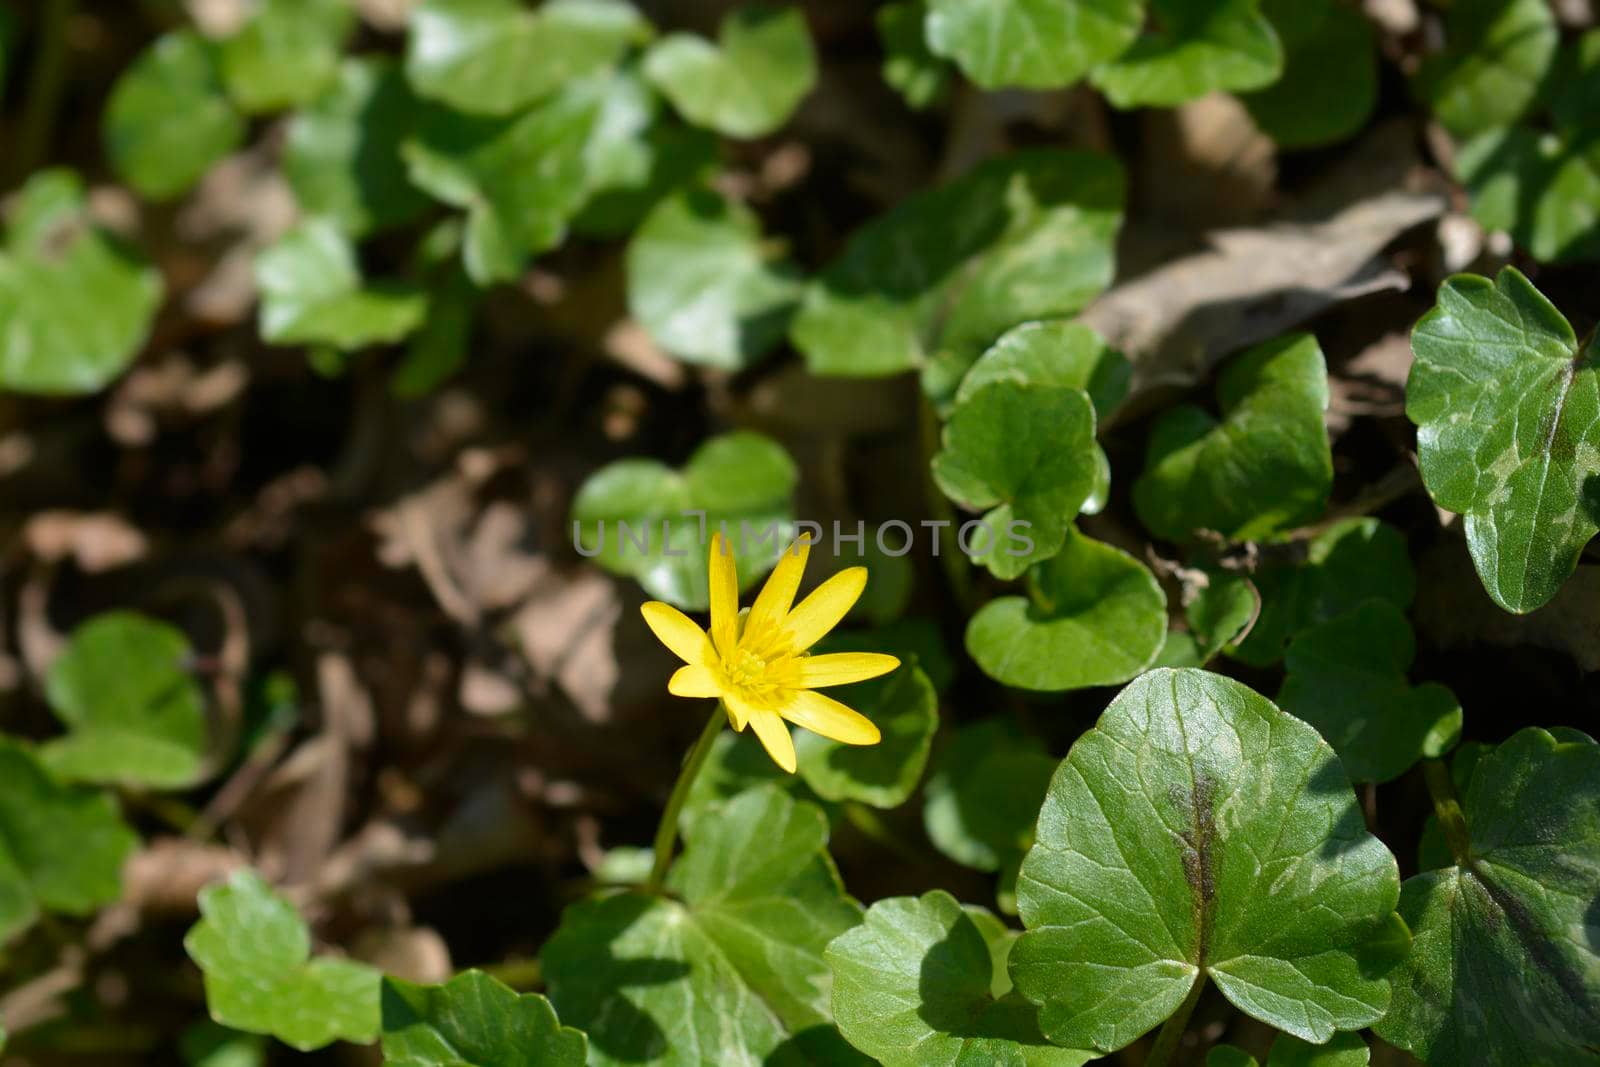 Lesser celandine flower - Latin name - Ficaria verna